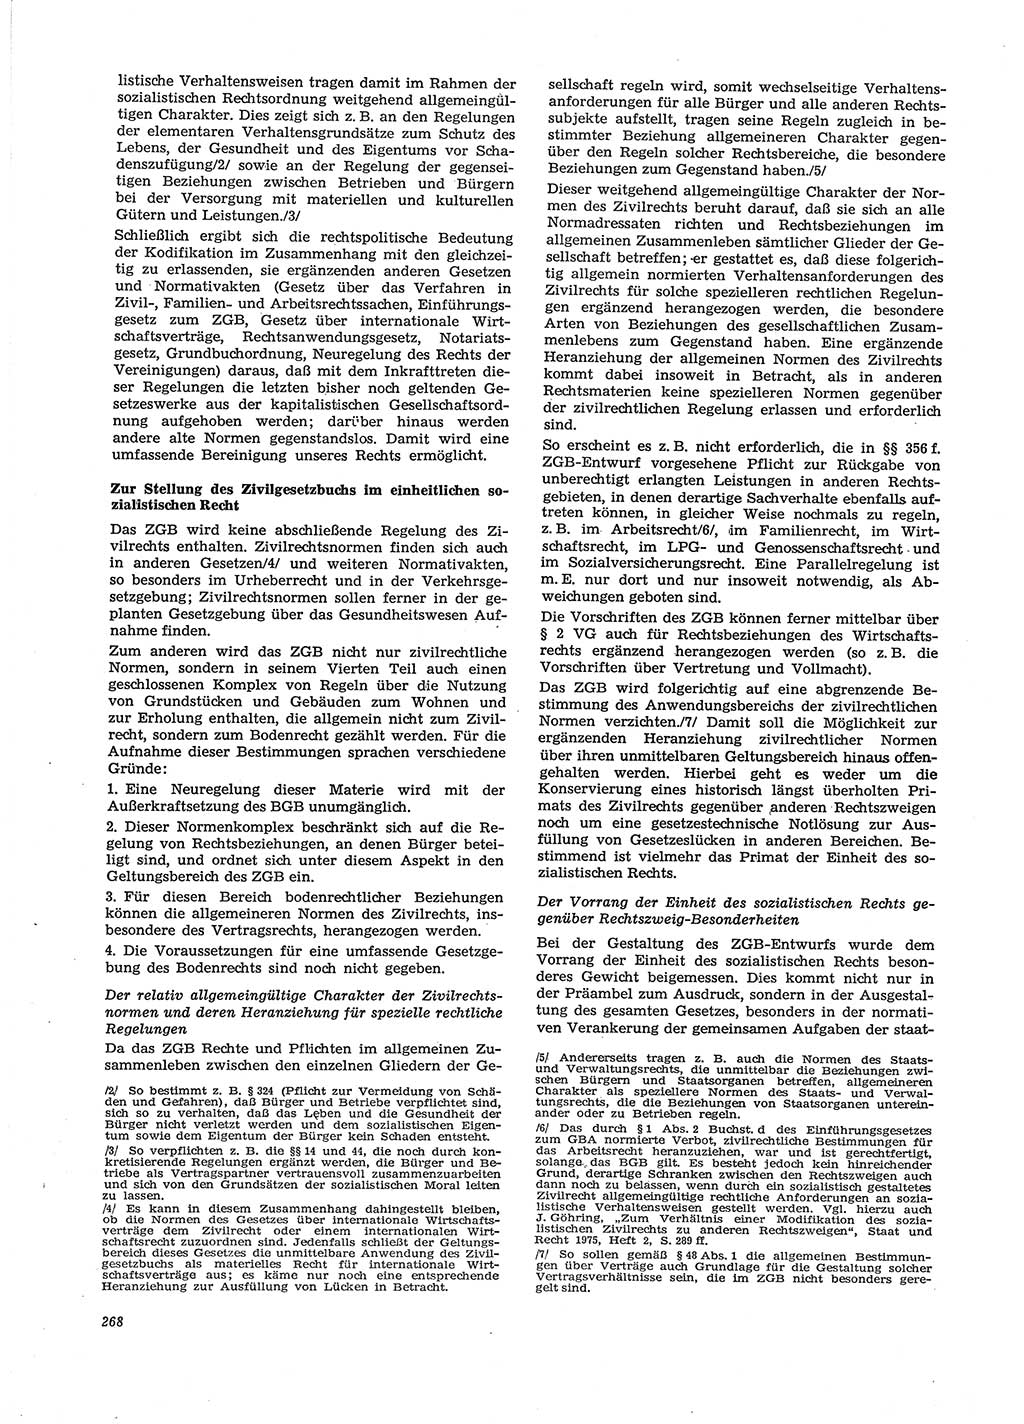 Neue Justiz (NJ), Zeitschrift für Recht und Rechtswissenschaft [Deutsche Demokratische Republik (DDR)], 29. Jahrgang 1975, Seite 268 (NJ DDR 1975, S. 268)